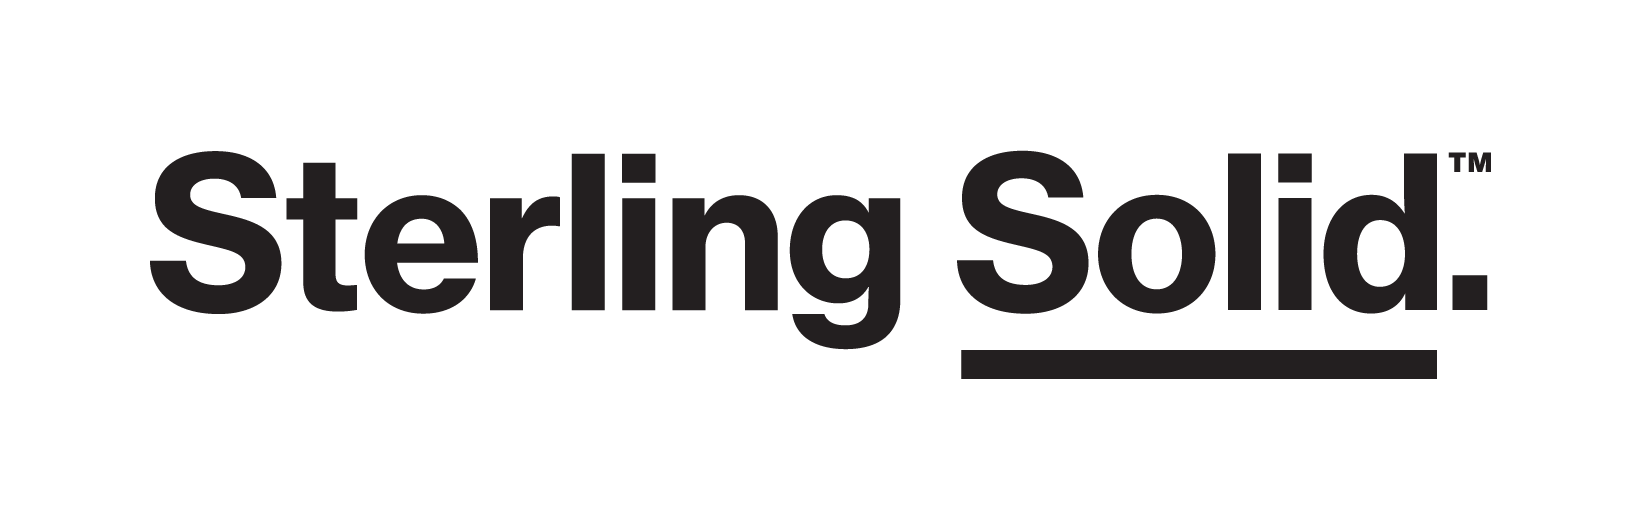 Sterling Solid Logo Single Line Black